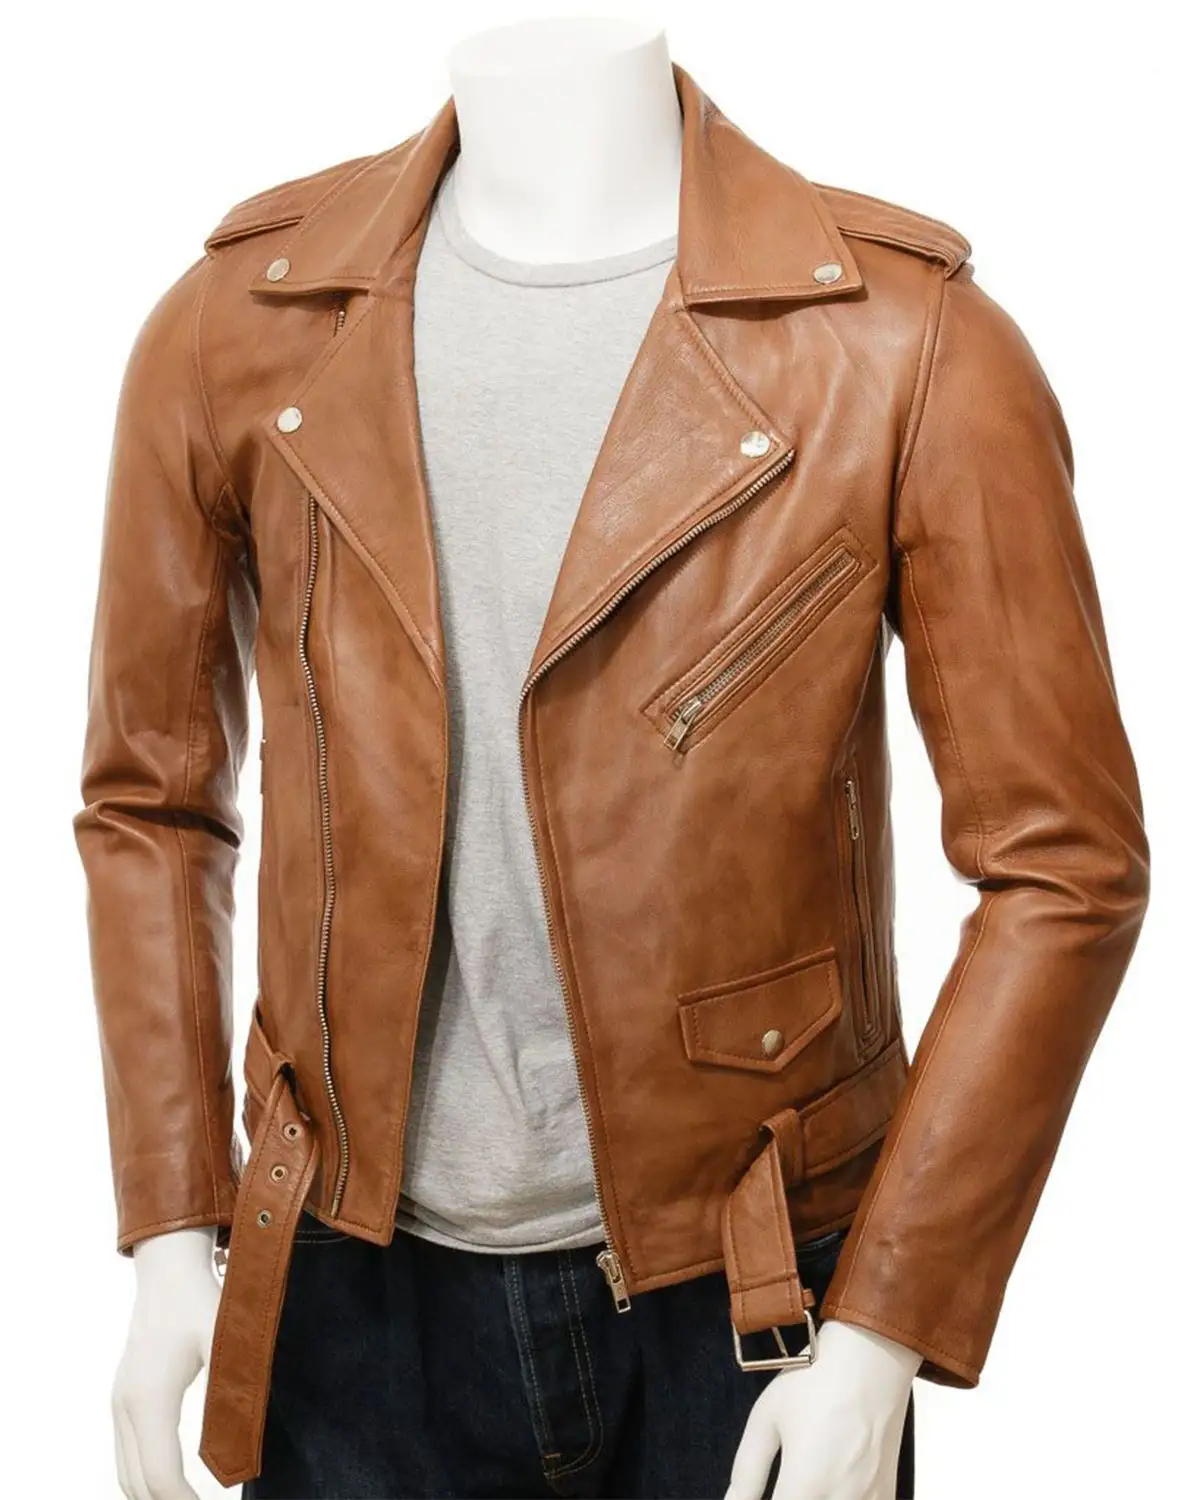 Men's Classic Brando Style Tan Biker Leather Jacket, Women Leather Biker Jackets